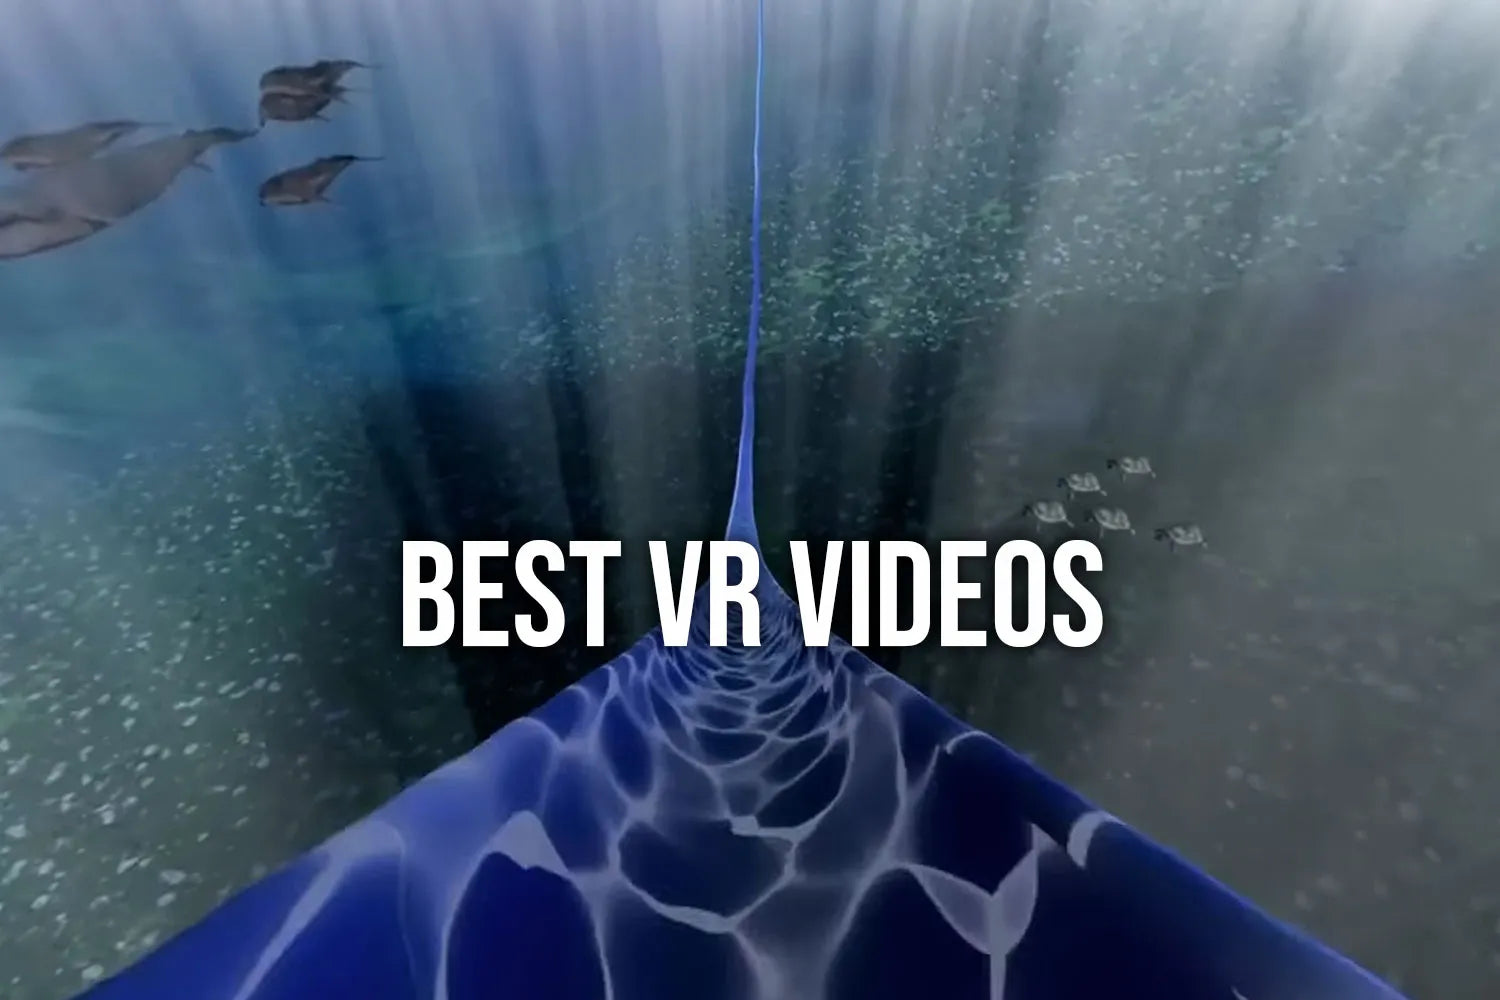 Best VR videos